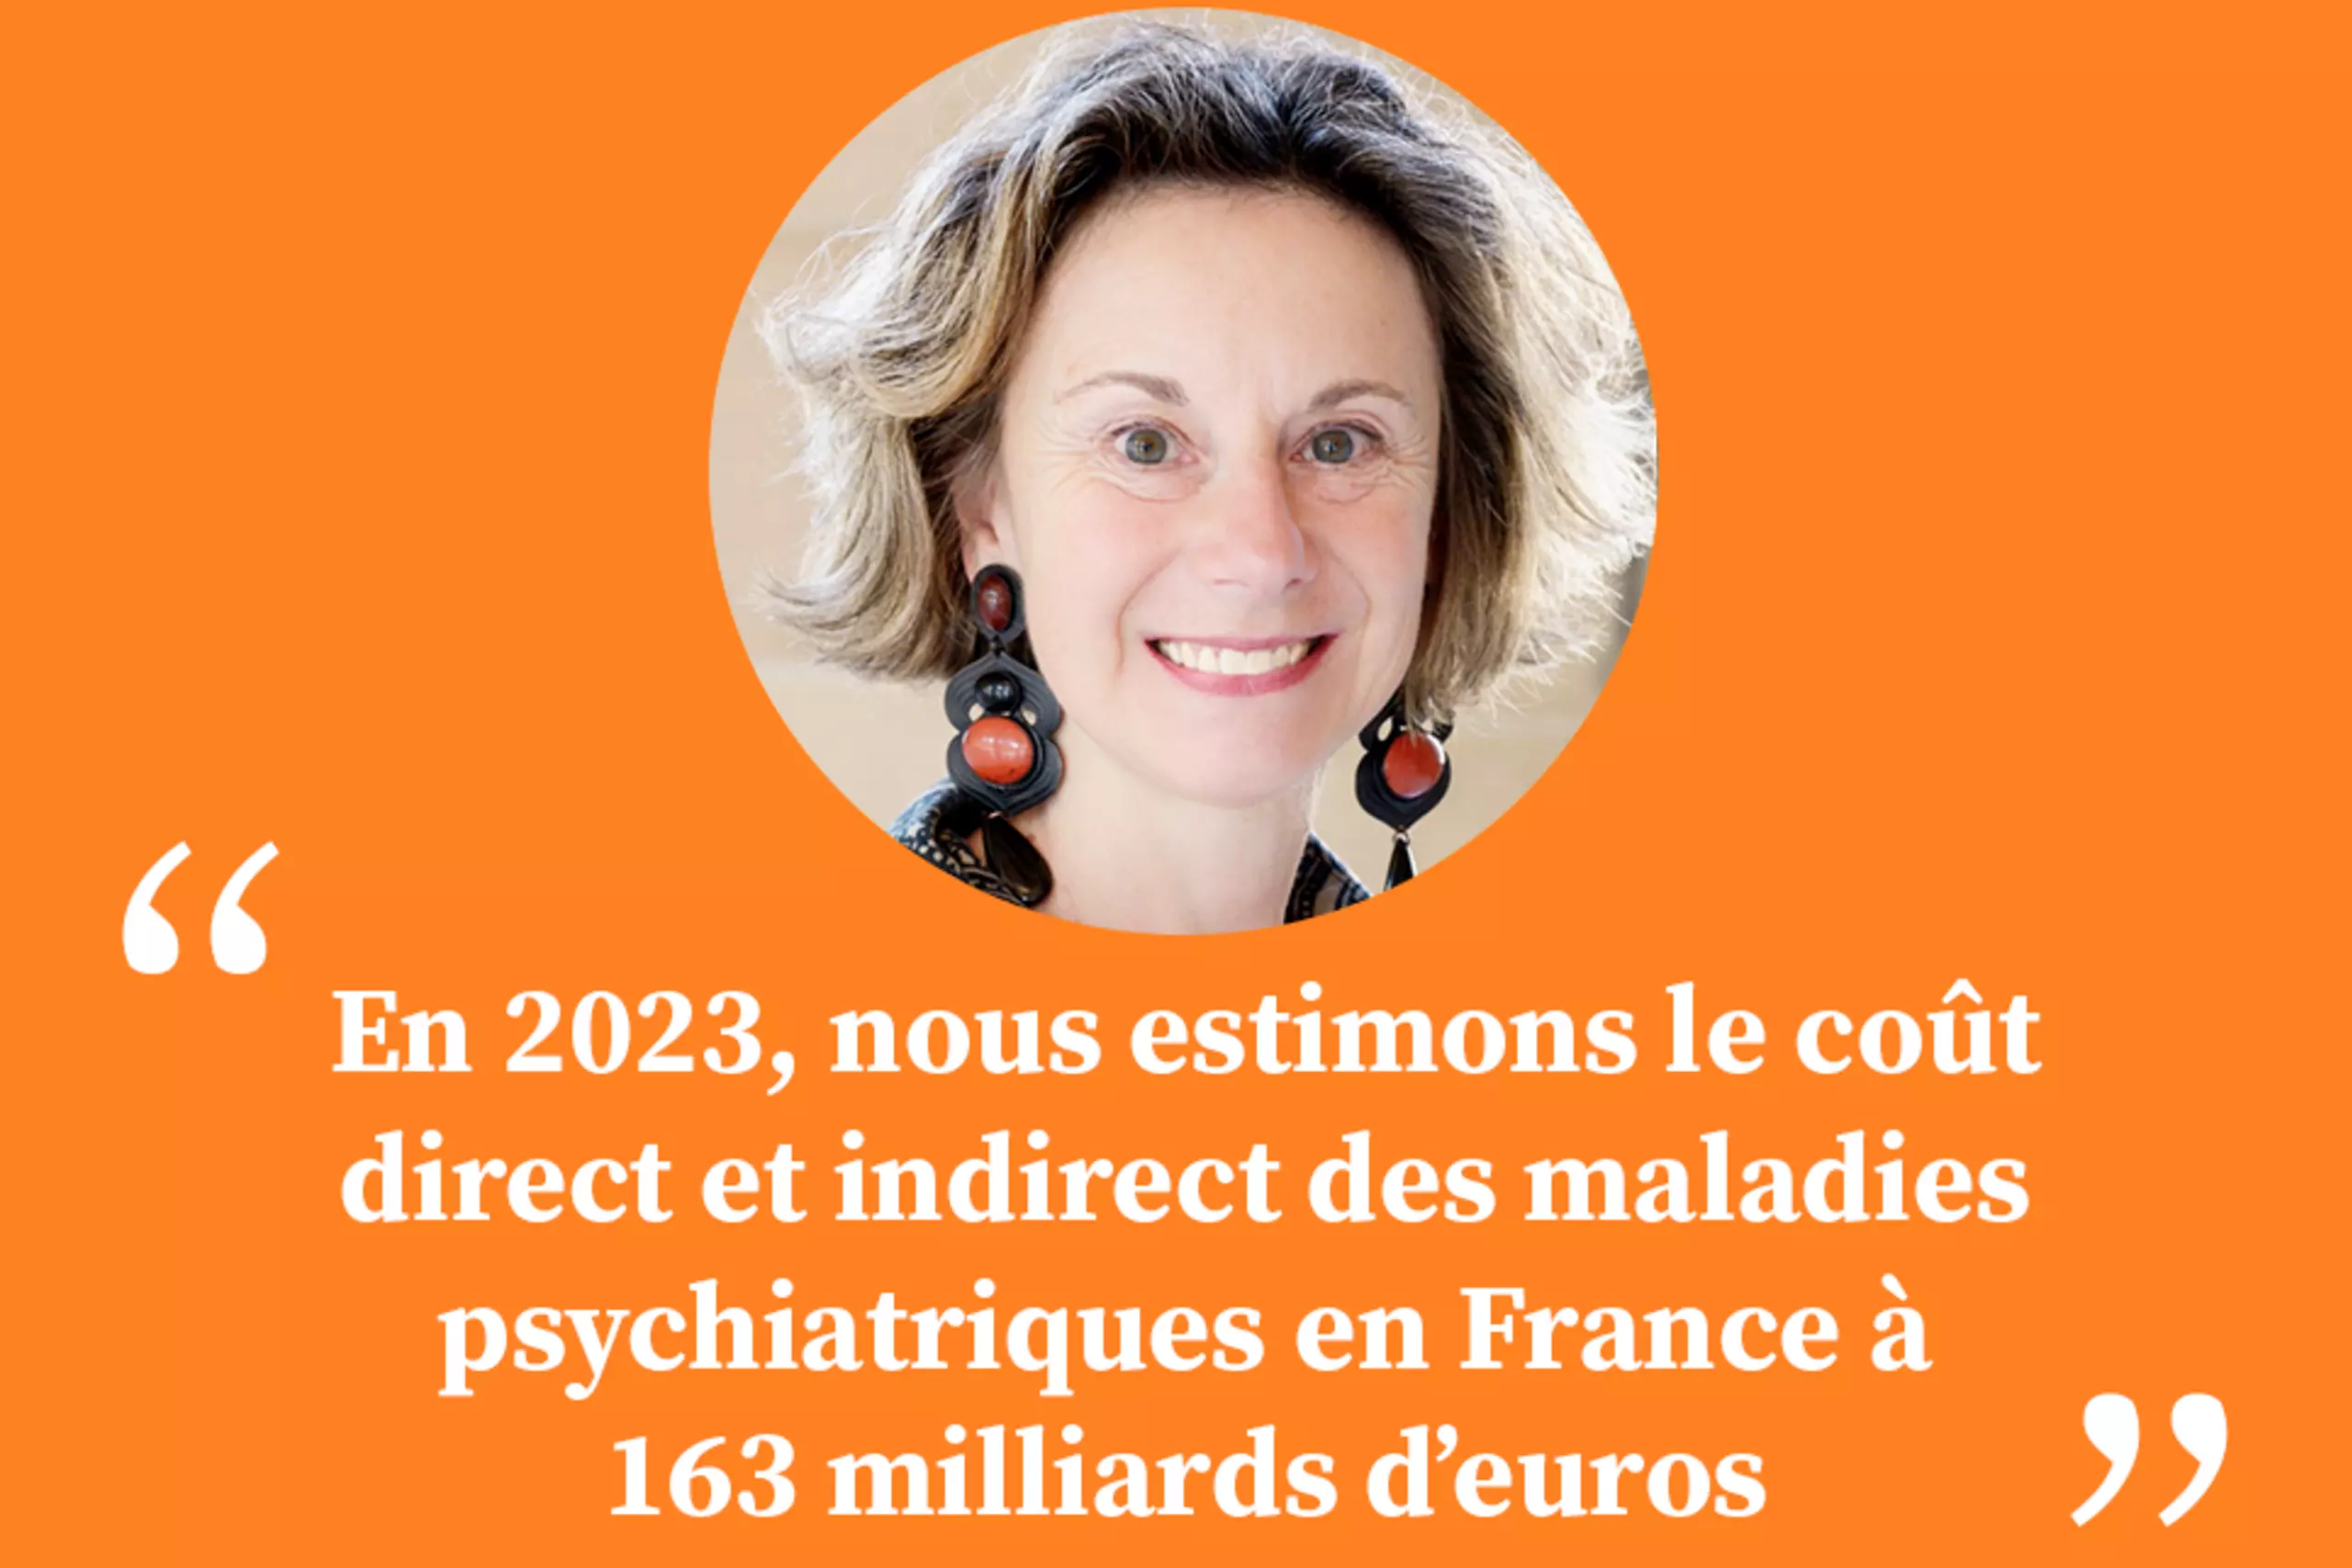 "En 2023, nous estimons le coût direct et indirect des maladies psychiatriques en France à 163 milliards d’euros"